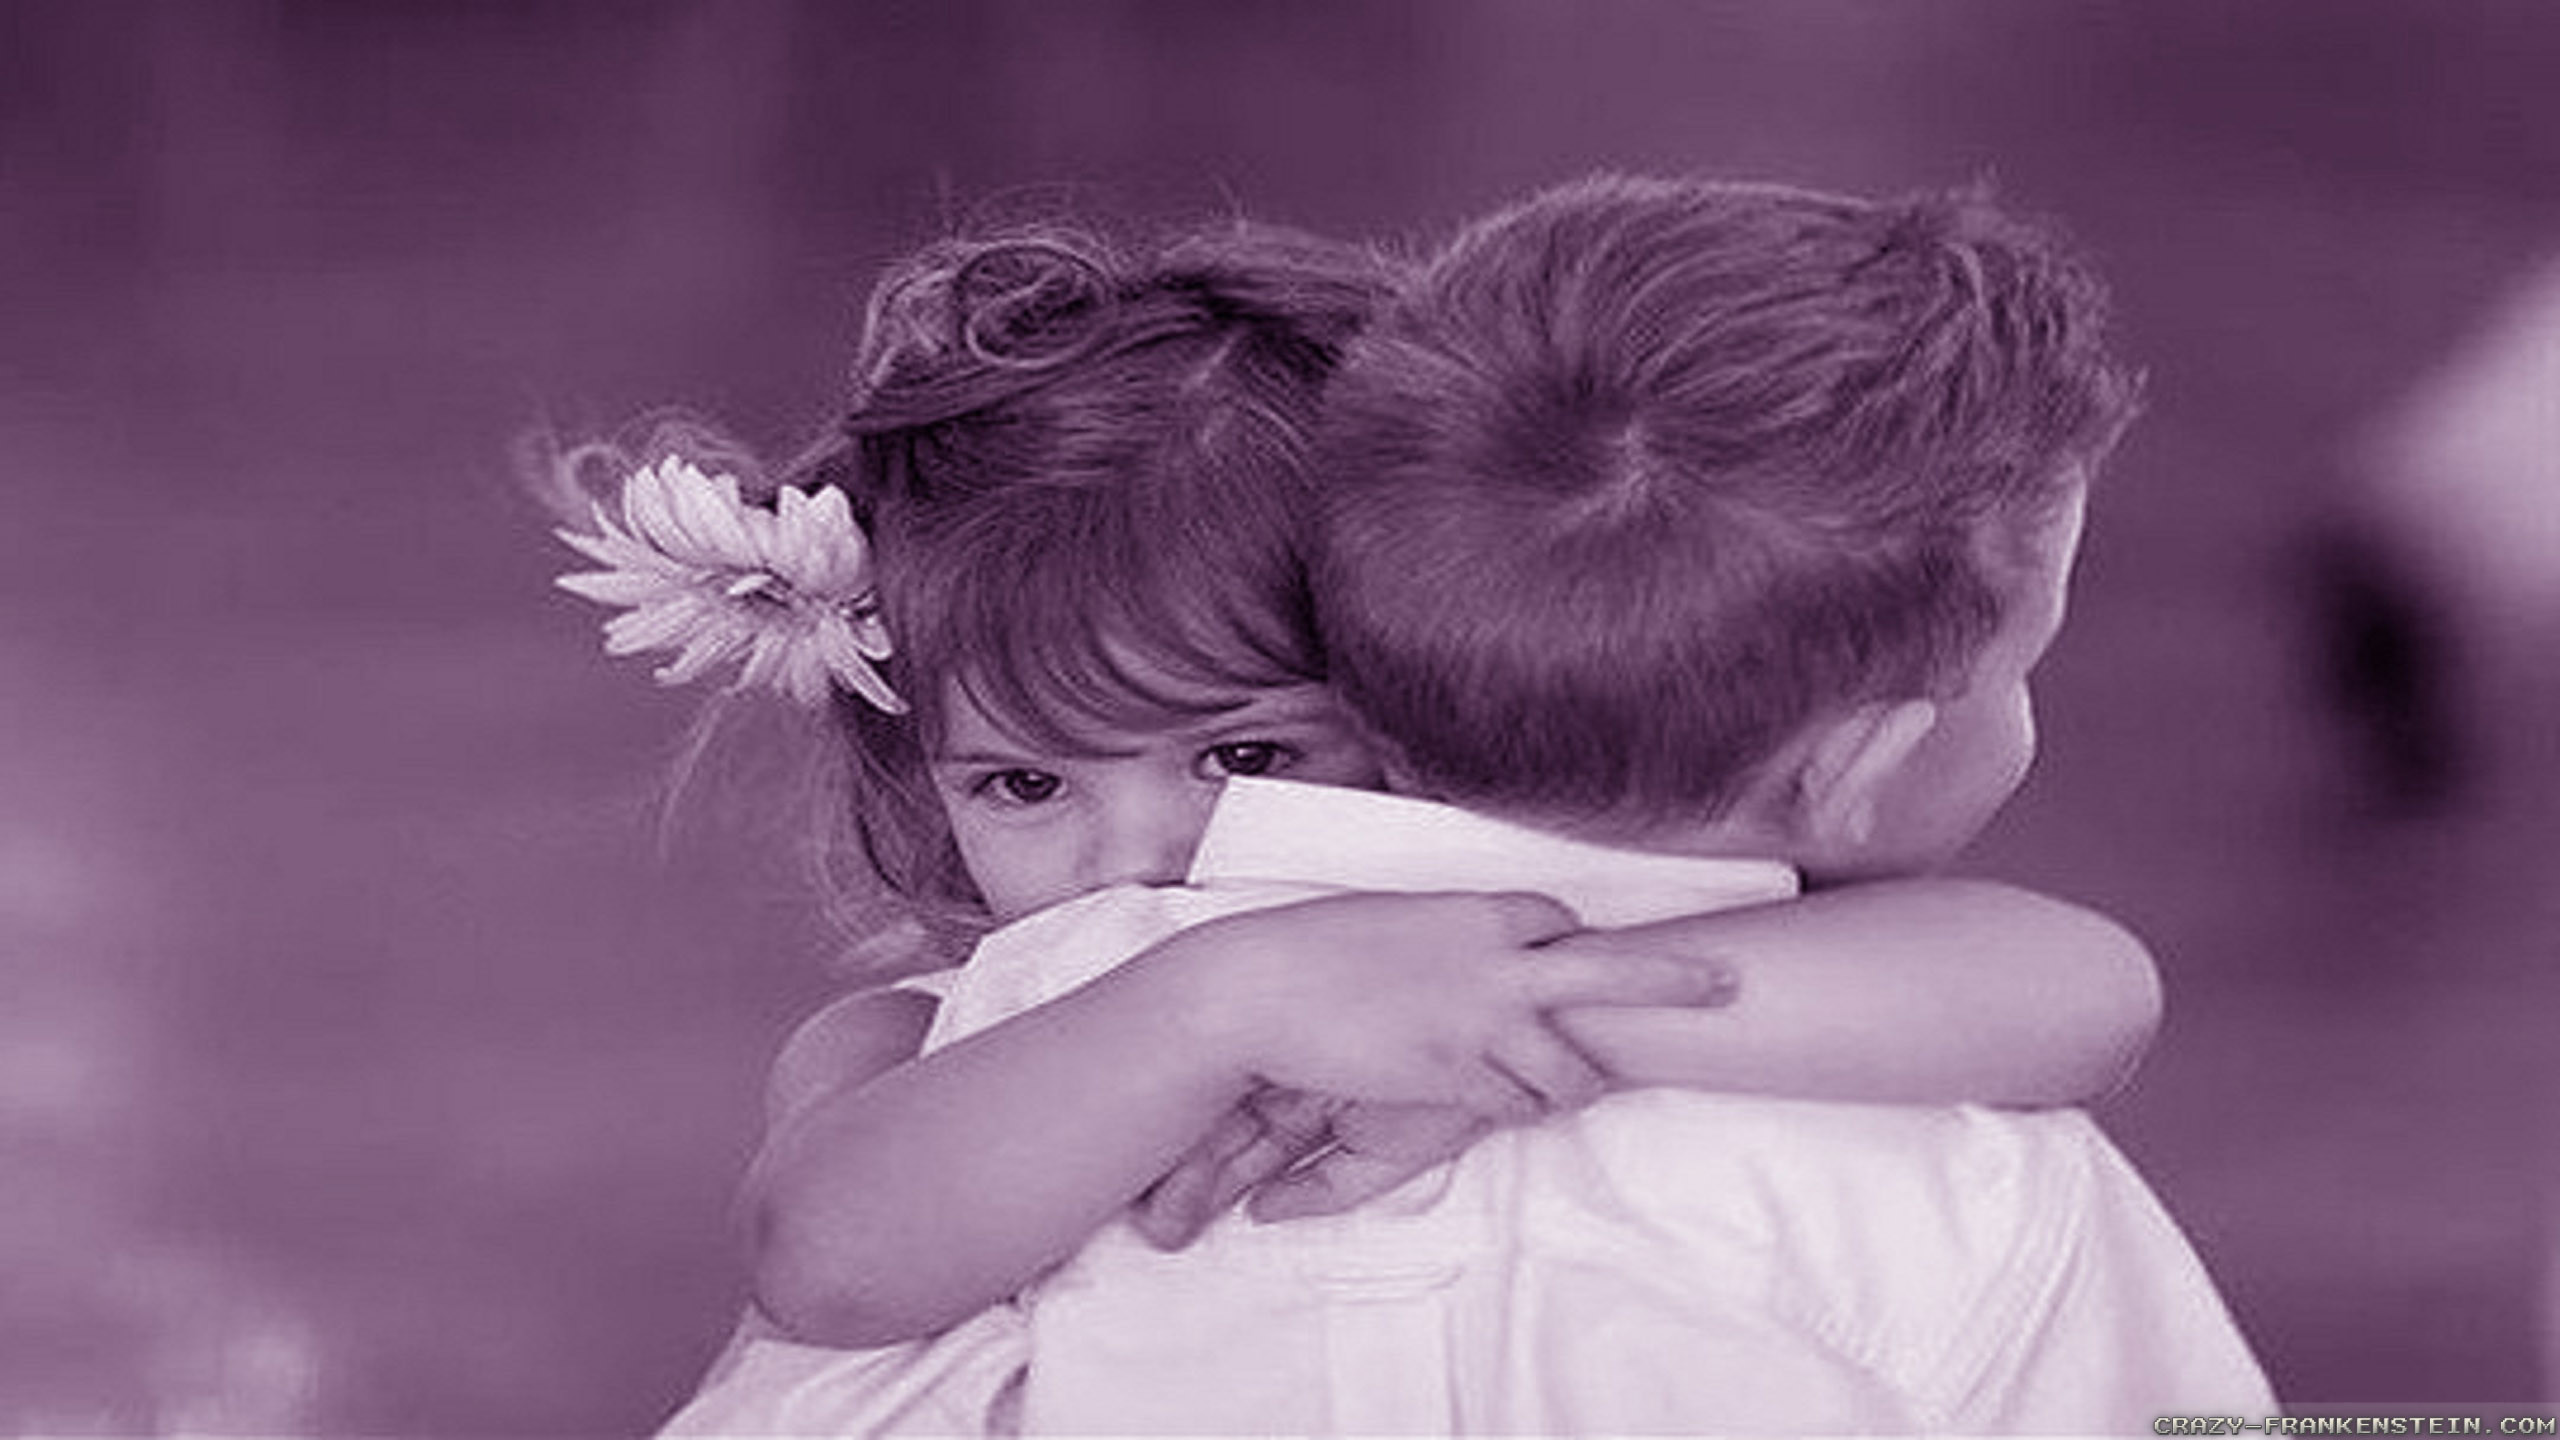 Обнимайте друг друга крепко. Мальчик и девочка обнимаются. Мальчик обнимает девочку. Объятия детей. Любовь к ребенку.